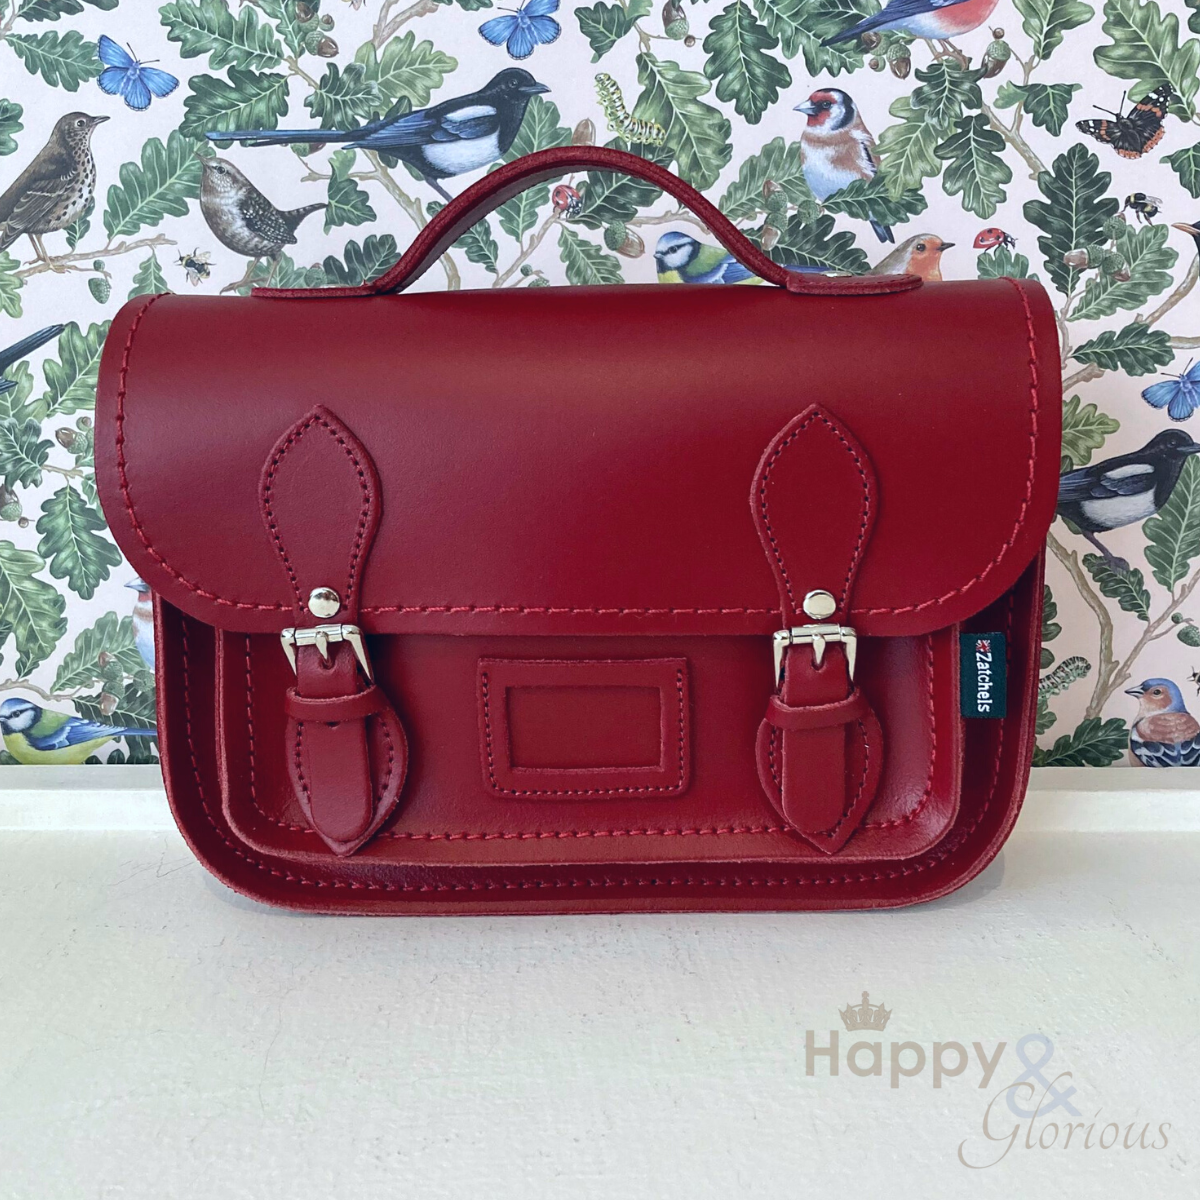 Red leather midi satchel